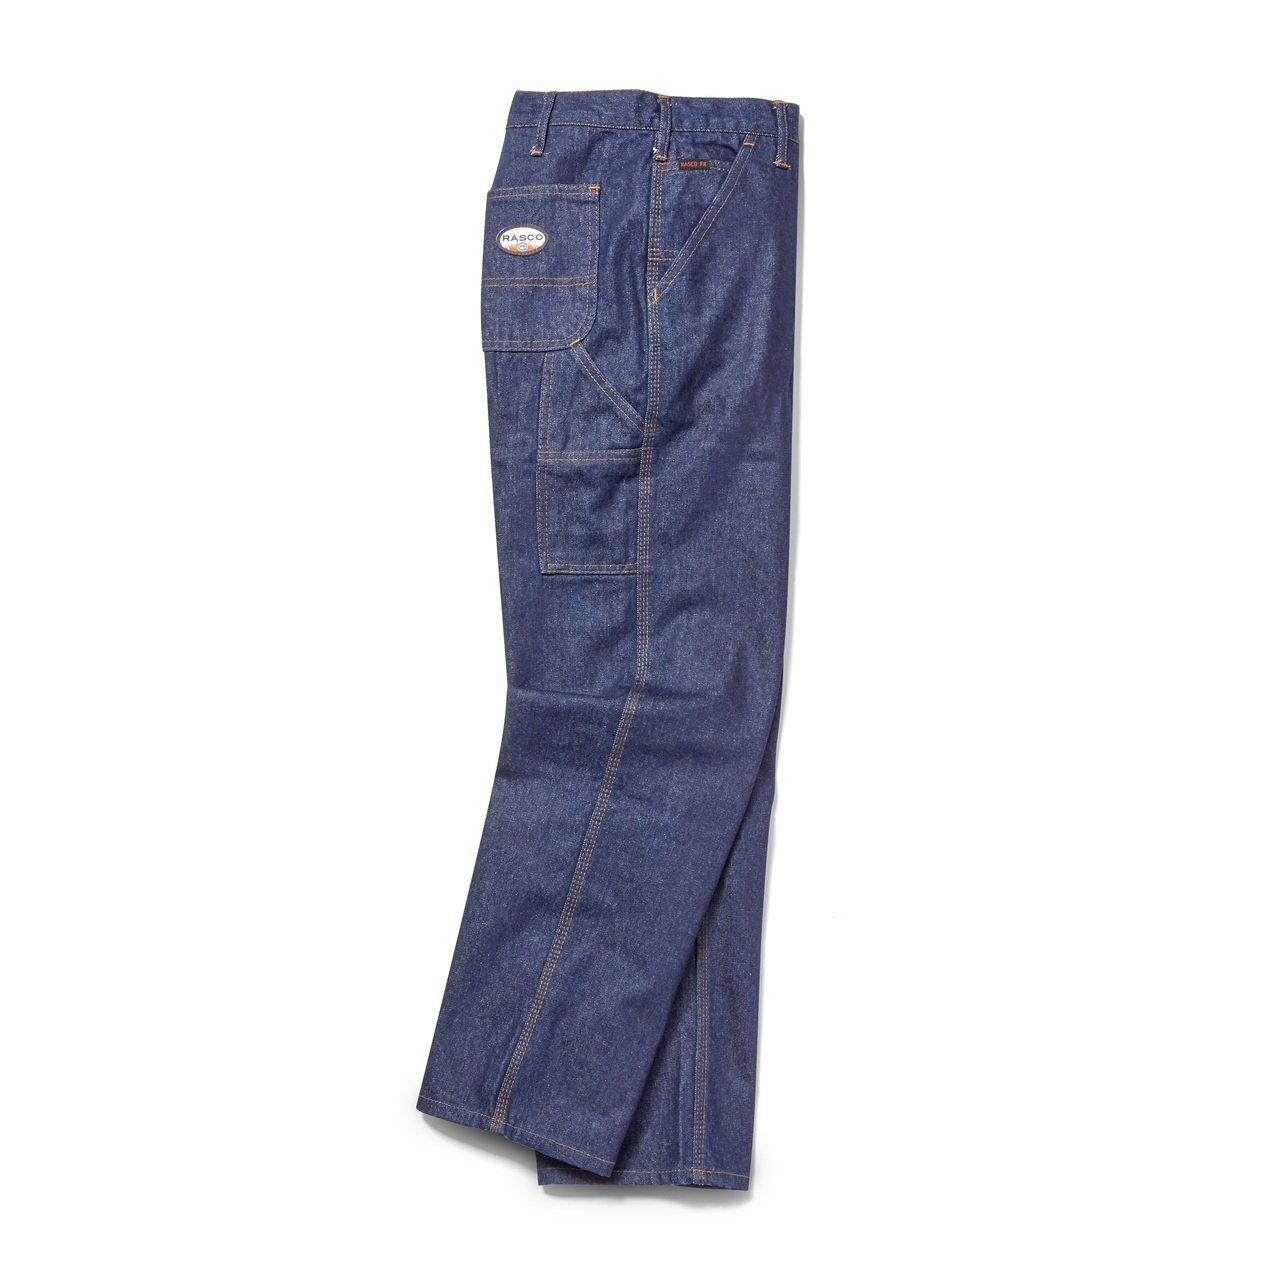 Rasco Men's Flame Resistant Carpenter Pants